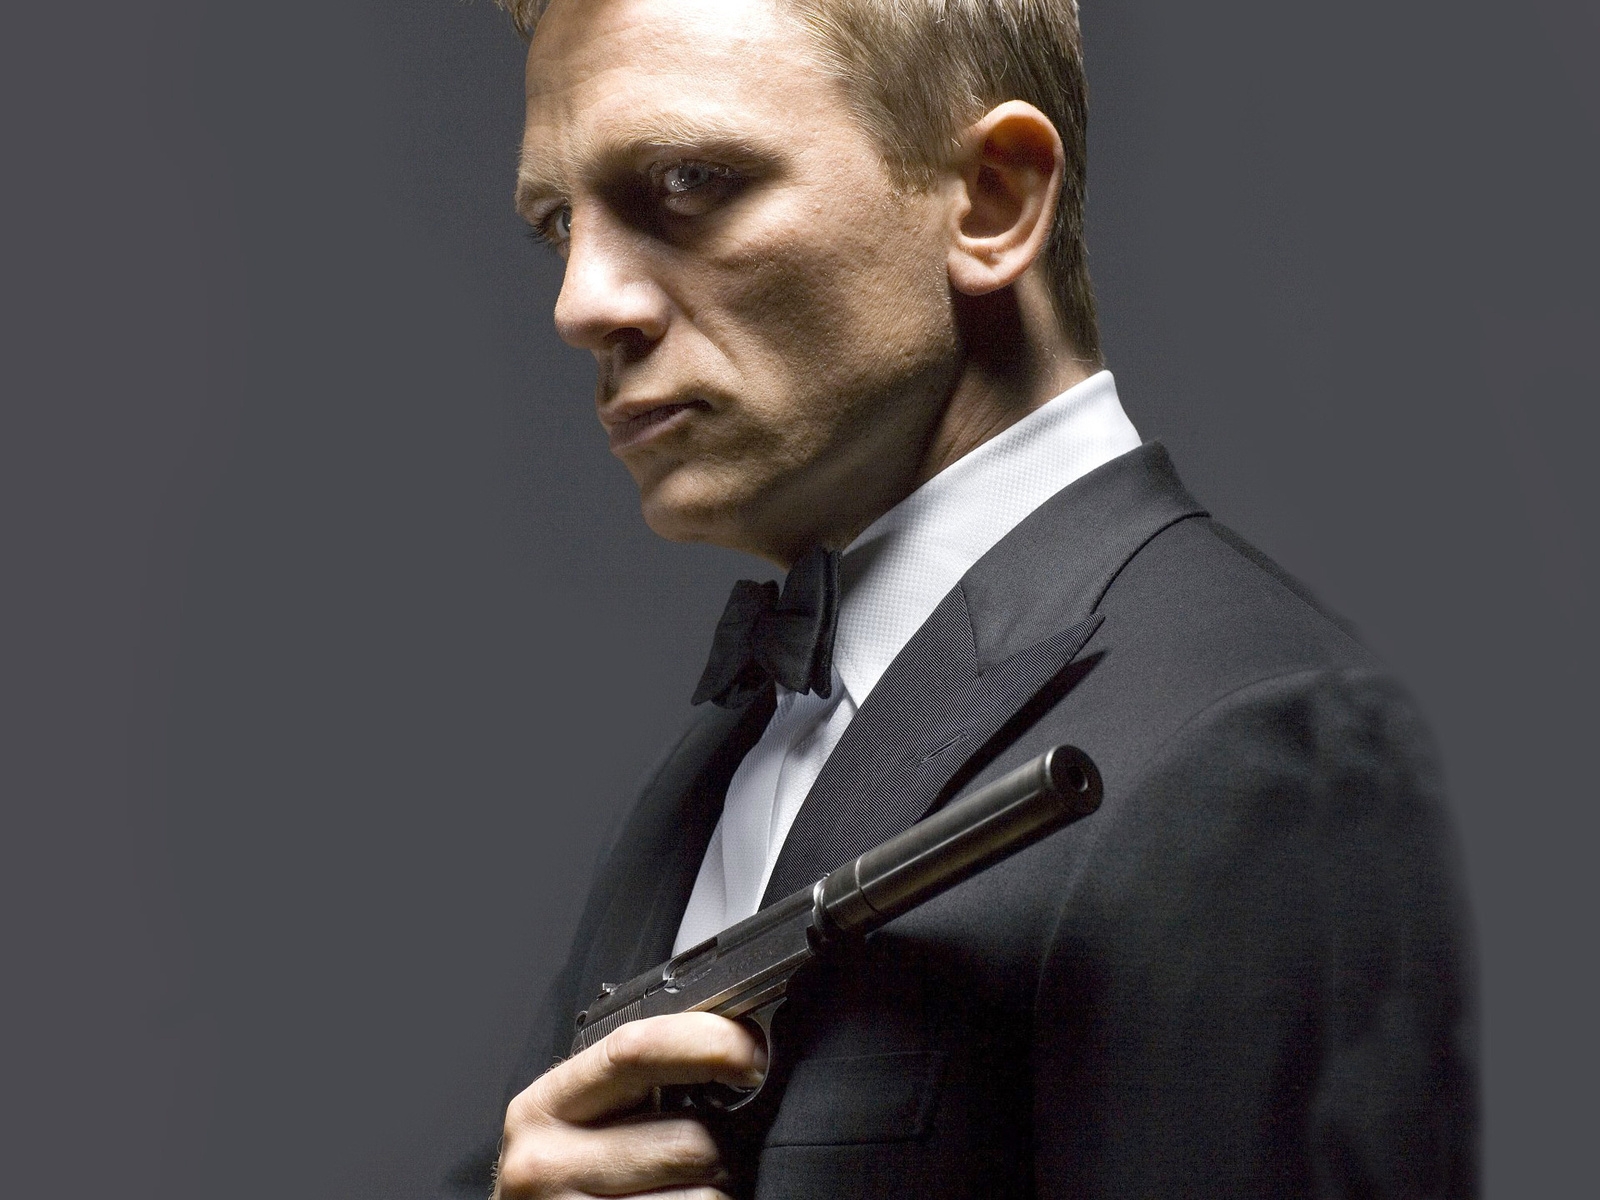 Daniel Craig 007 for 1600 x 1200 resolution